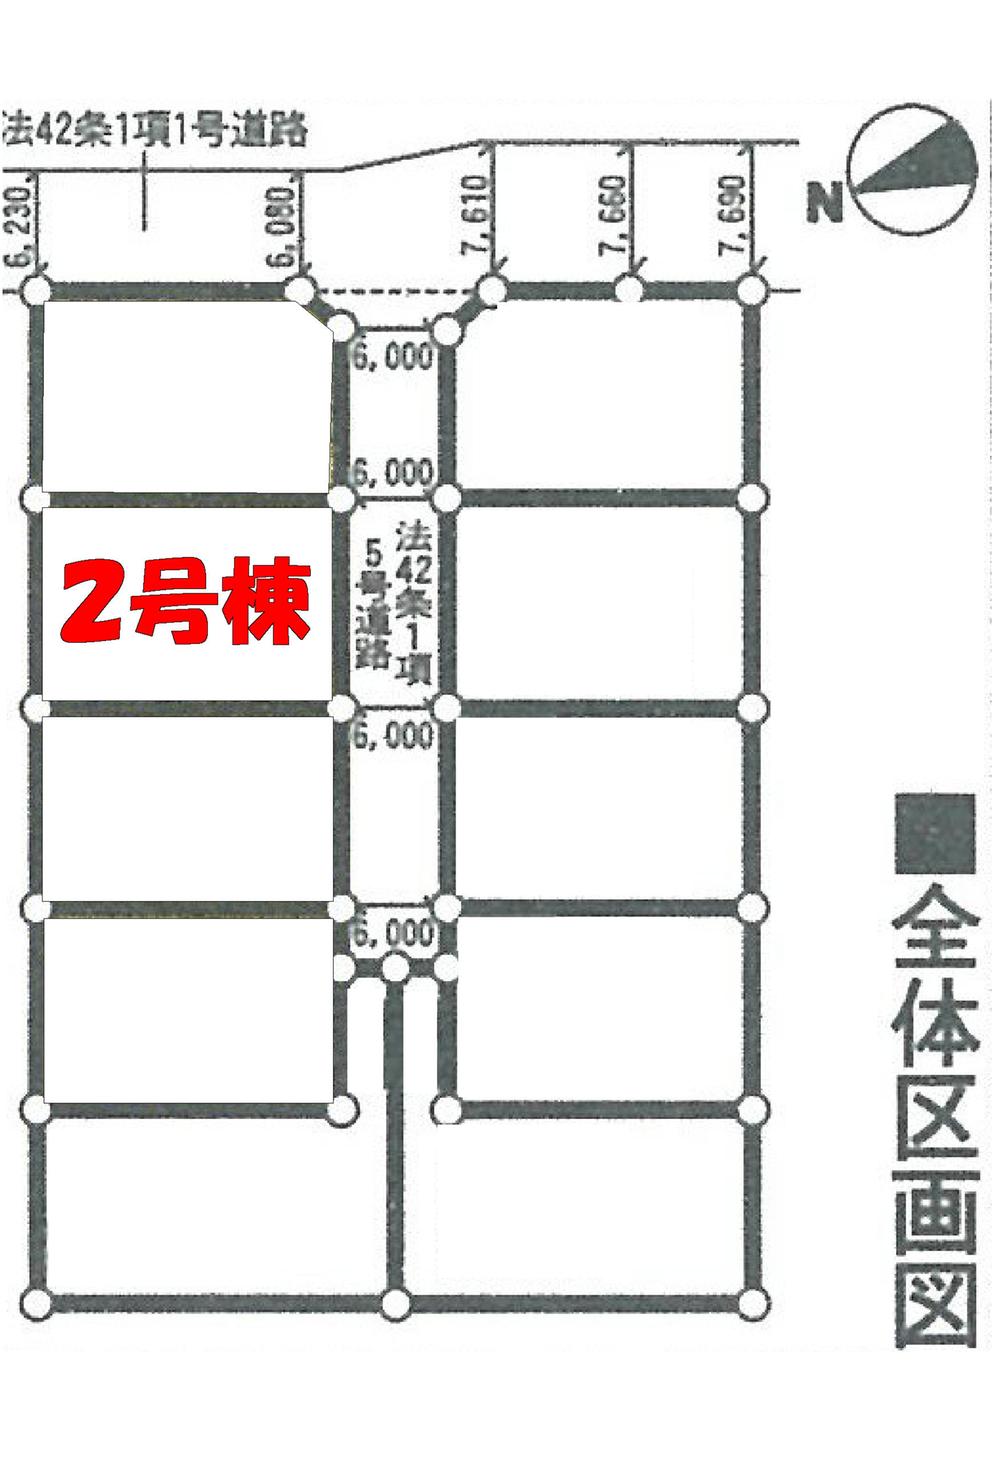 Compartment figure. 21.9 million yen, 4LDK, Land area 164.56 sq m , Building area 98.01 sq m